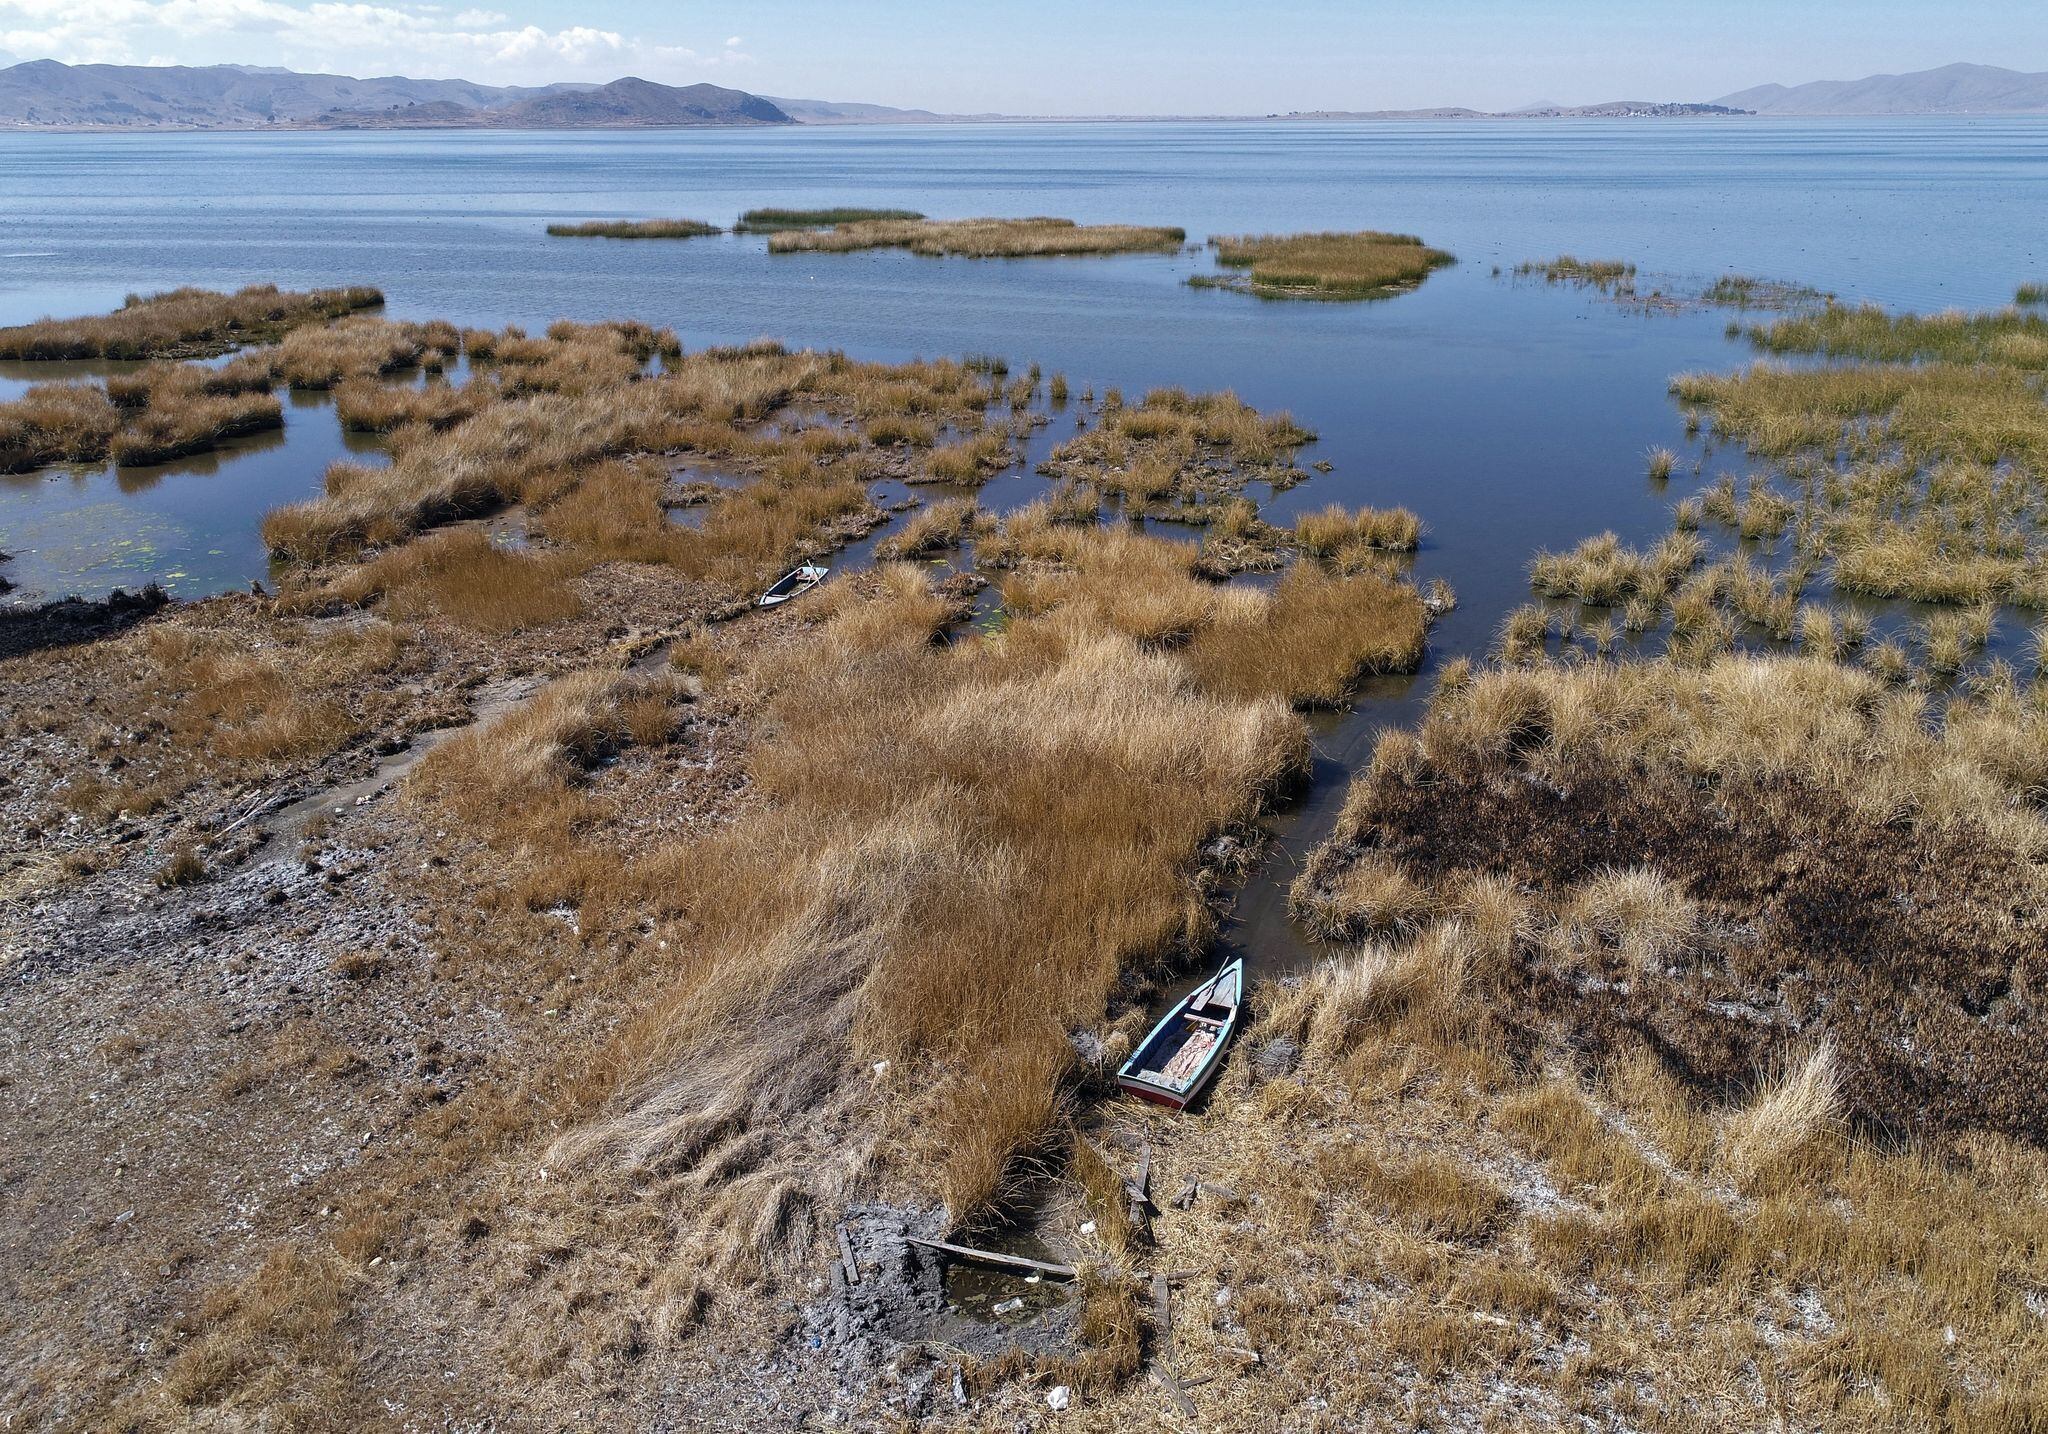 De concretarse la presencia de El Niño Global en Perú, el descenso del nivel de agua en el lago Titicaca podría aumentar. (Foto: AFP)